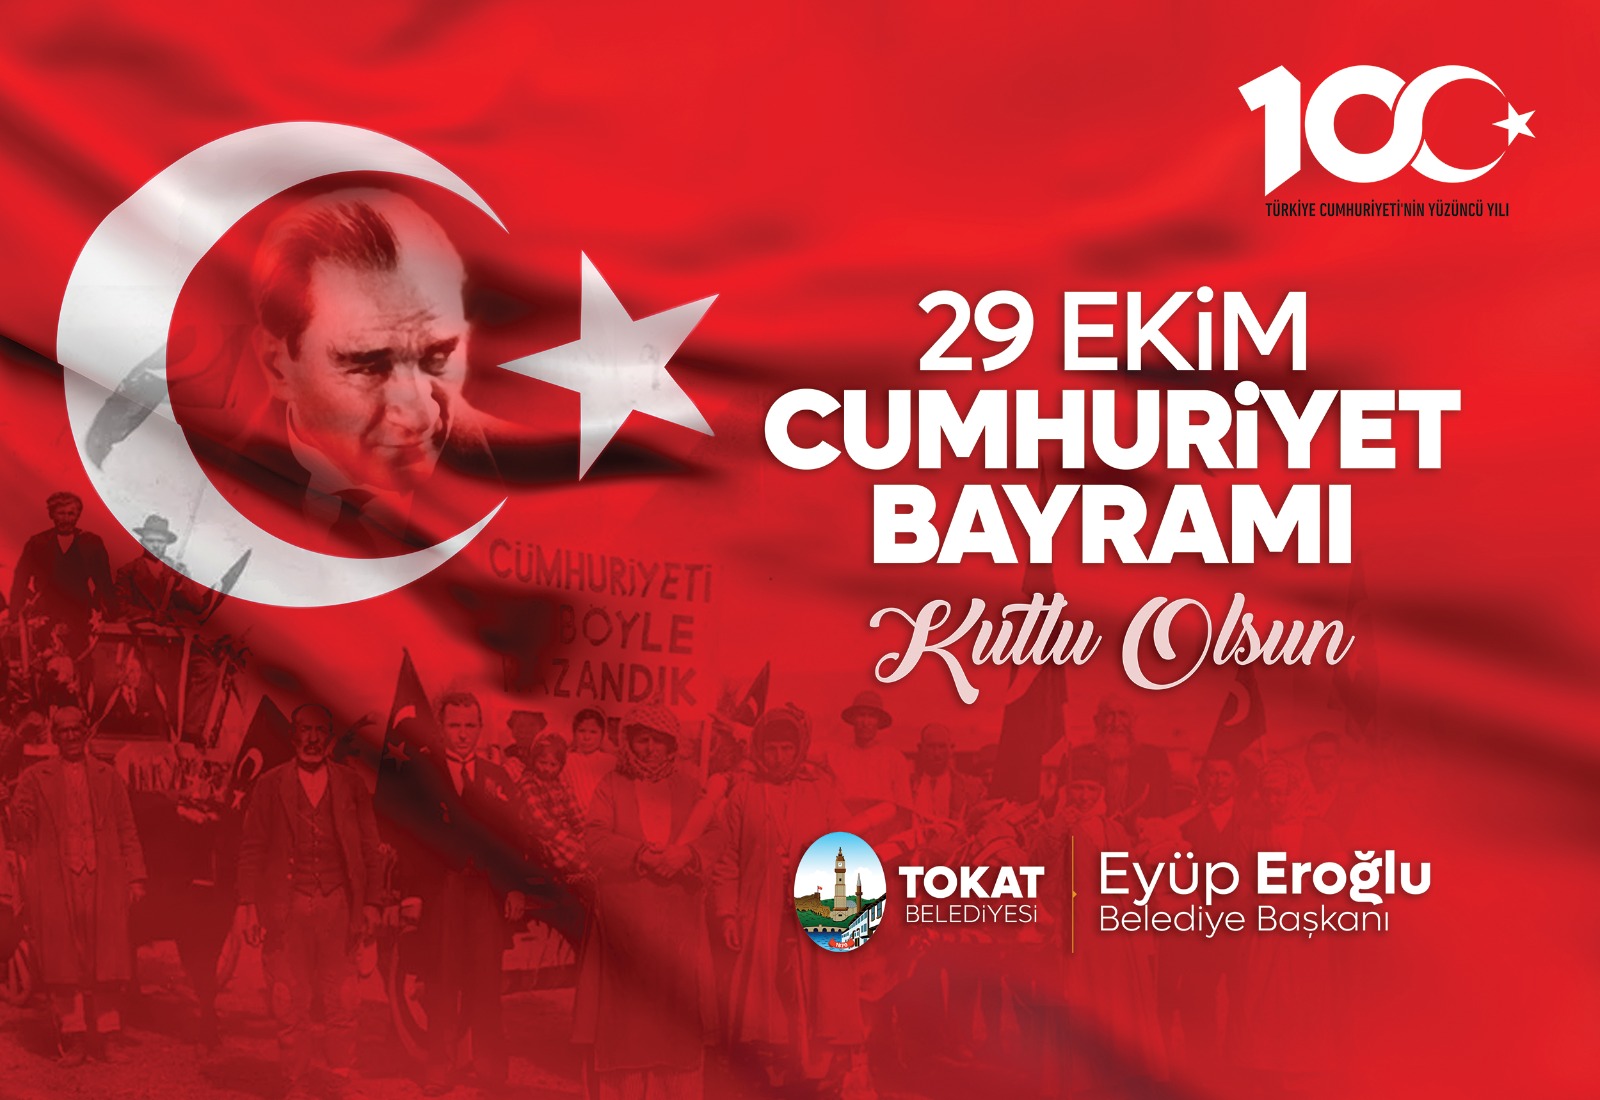 Tokat Belediye Başkanı Eyüp Eroğlu’nun Devletimizin 100.Yaşı Kutlamalarındaki Tebrik Mesajı